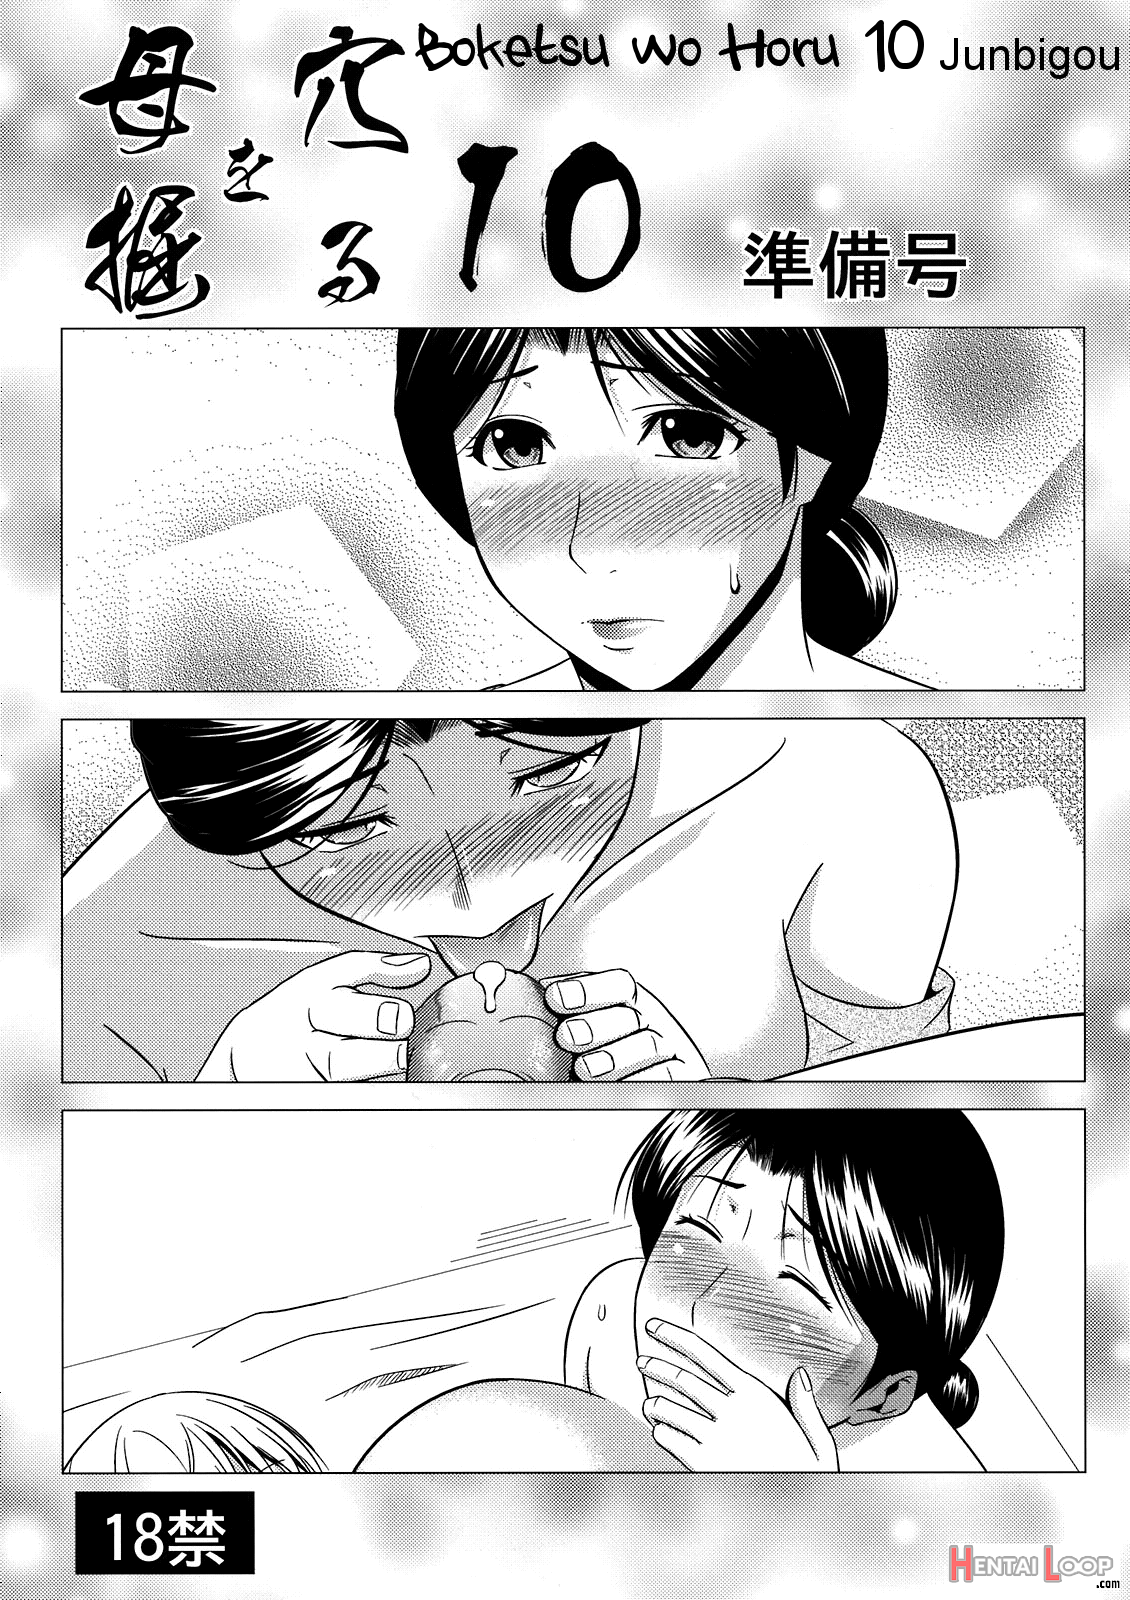 Boketsu O Horu 10 Junbigou page 1